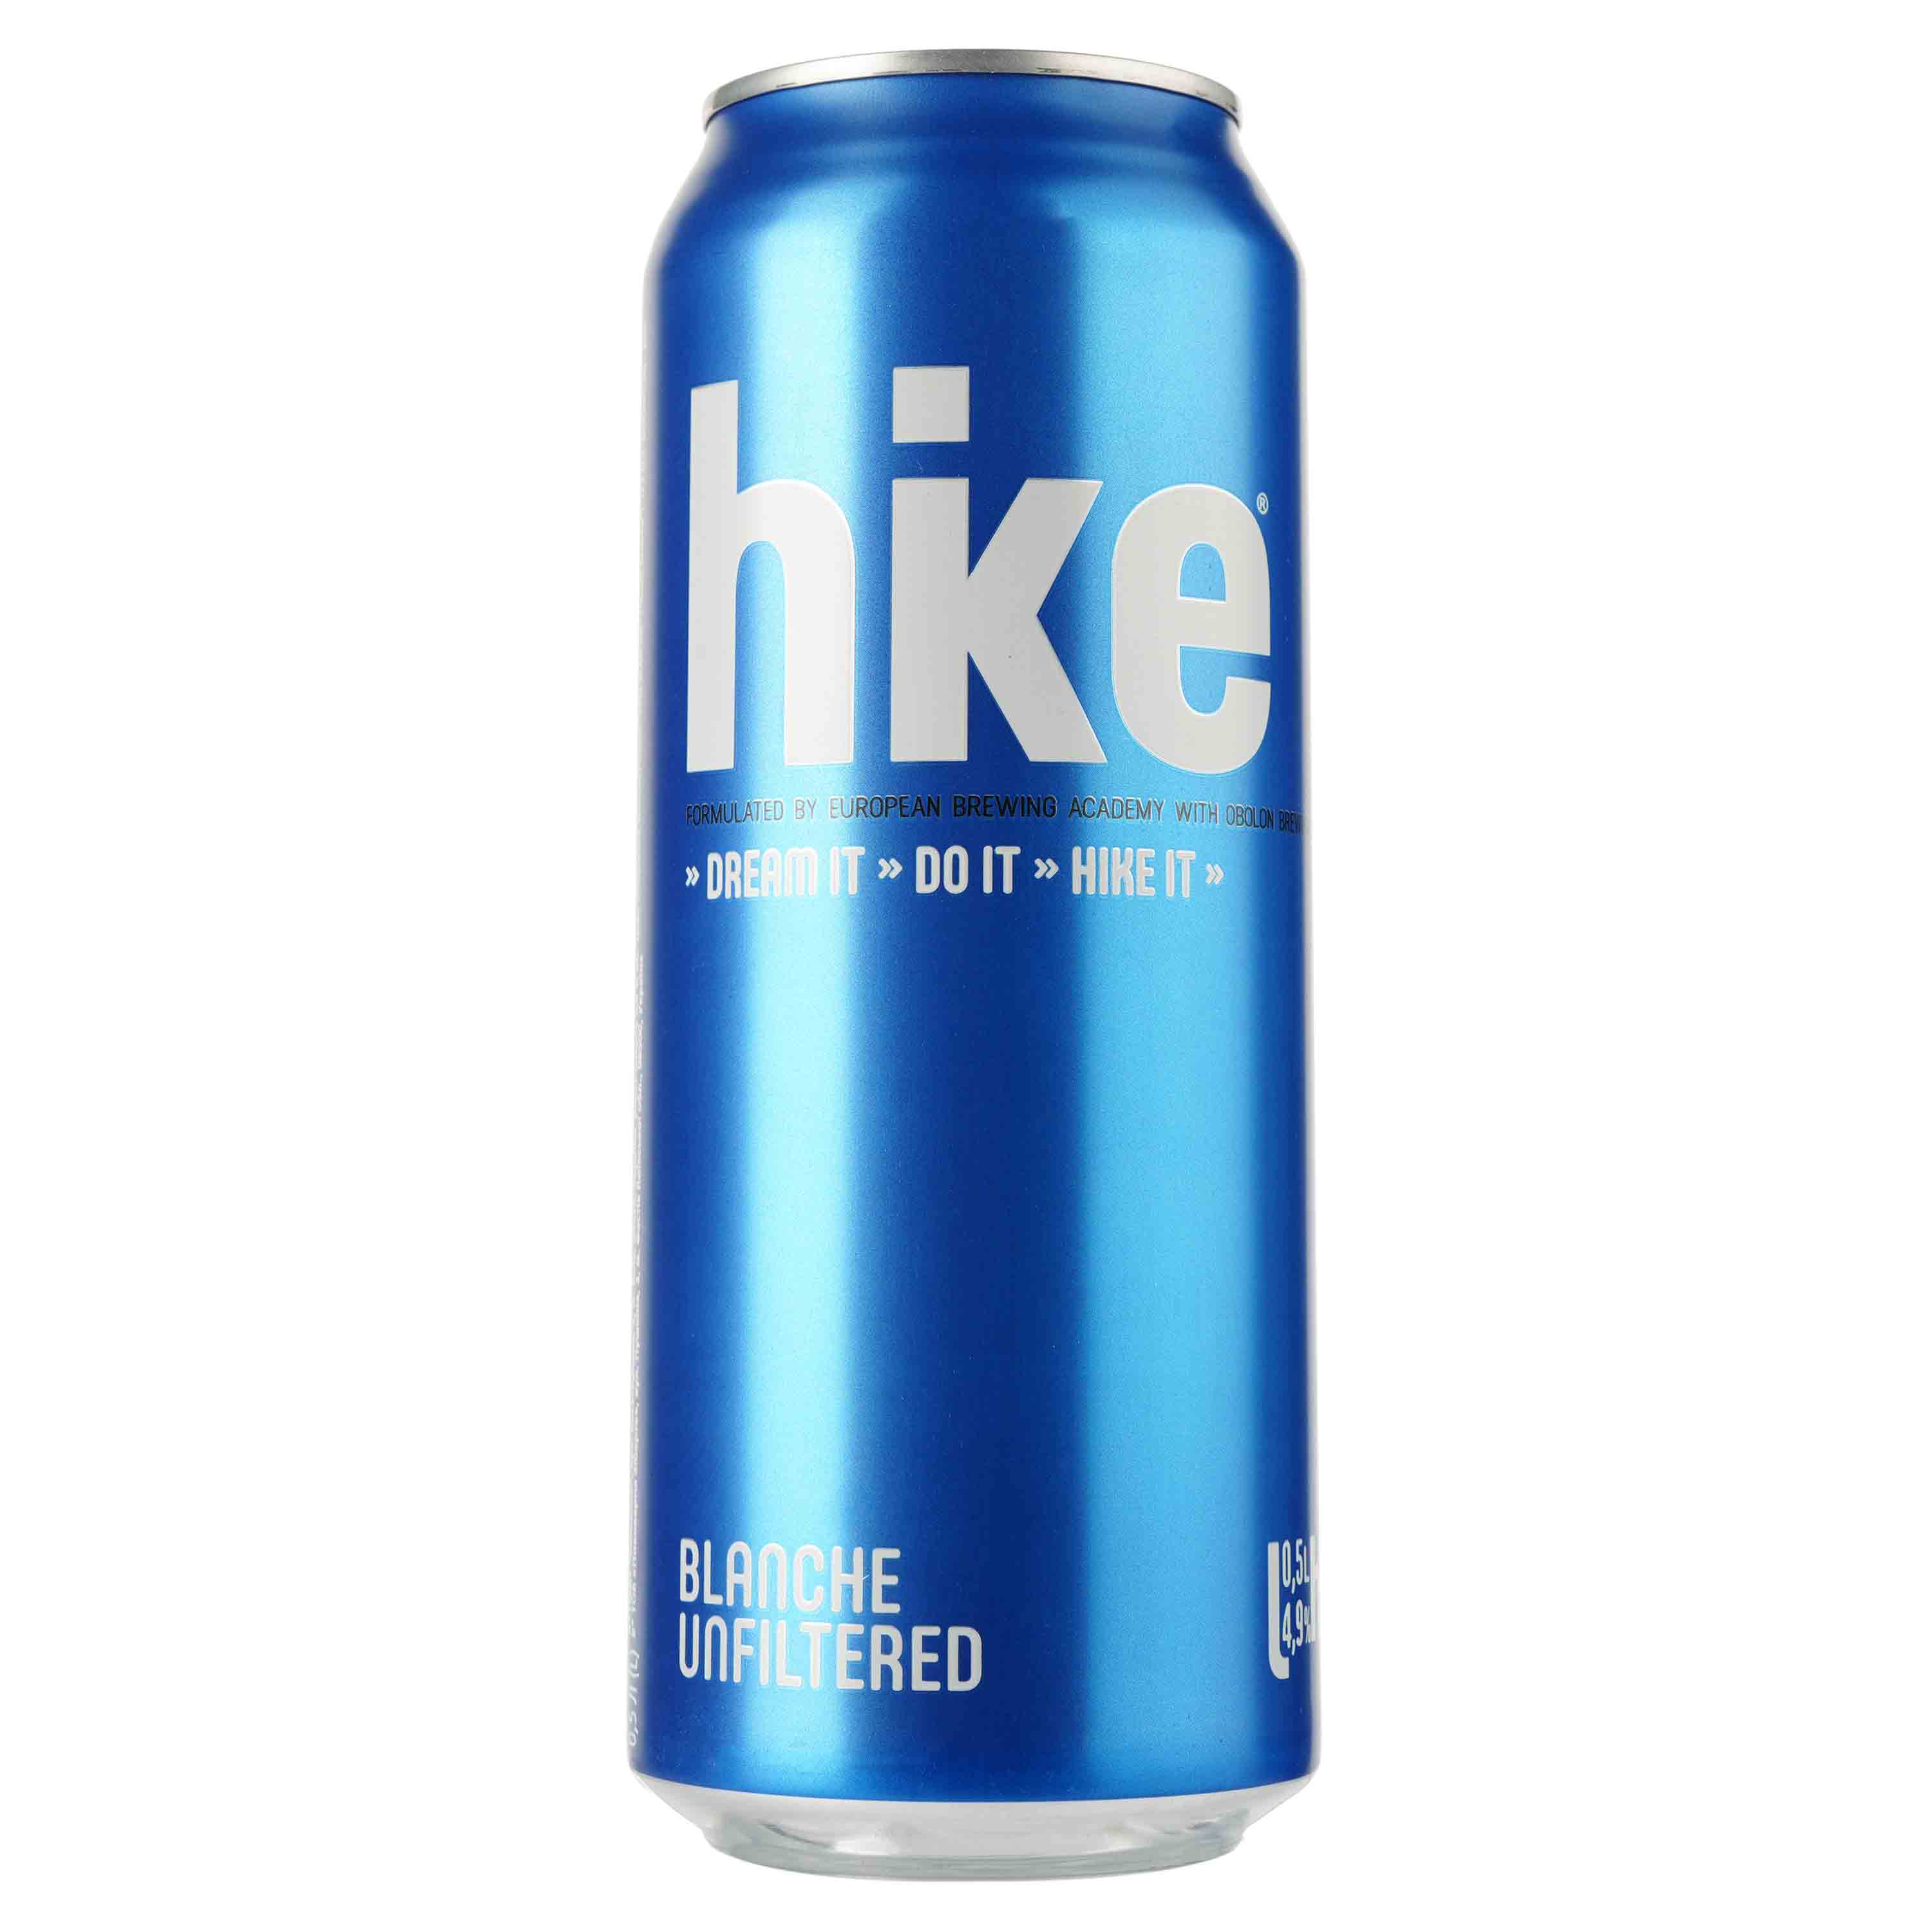 Пиво Hike Blanche, світле, 4,9%, з/б, 0,5 л (781555) - фото 1